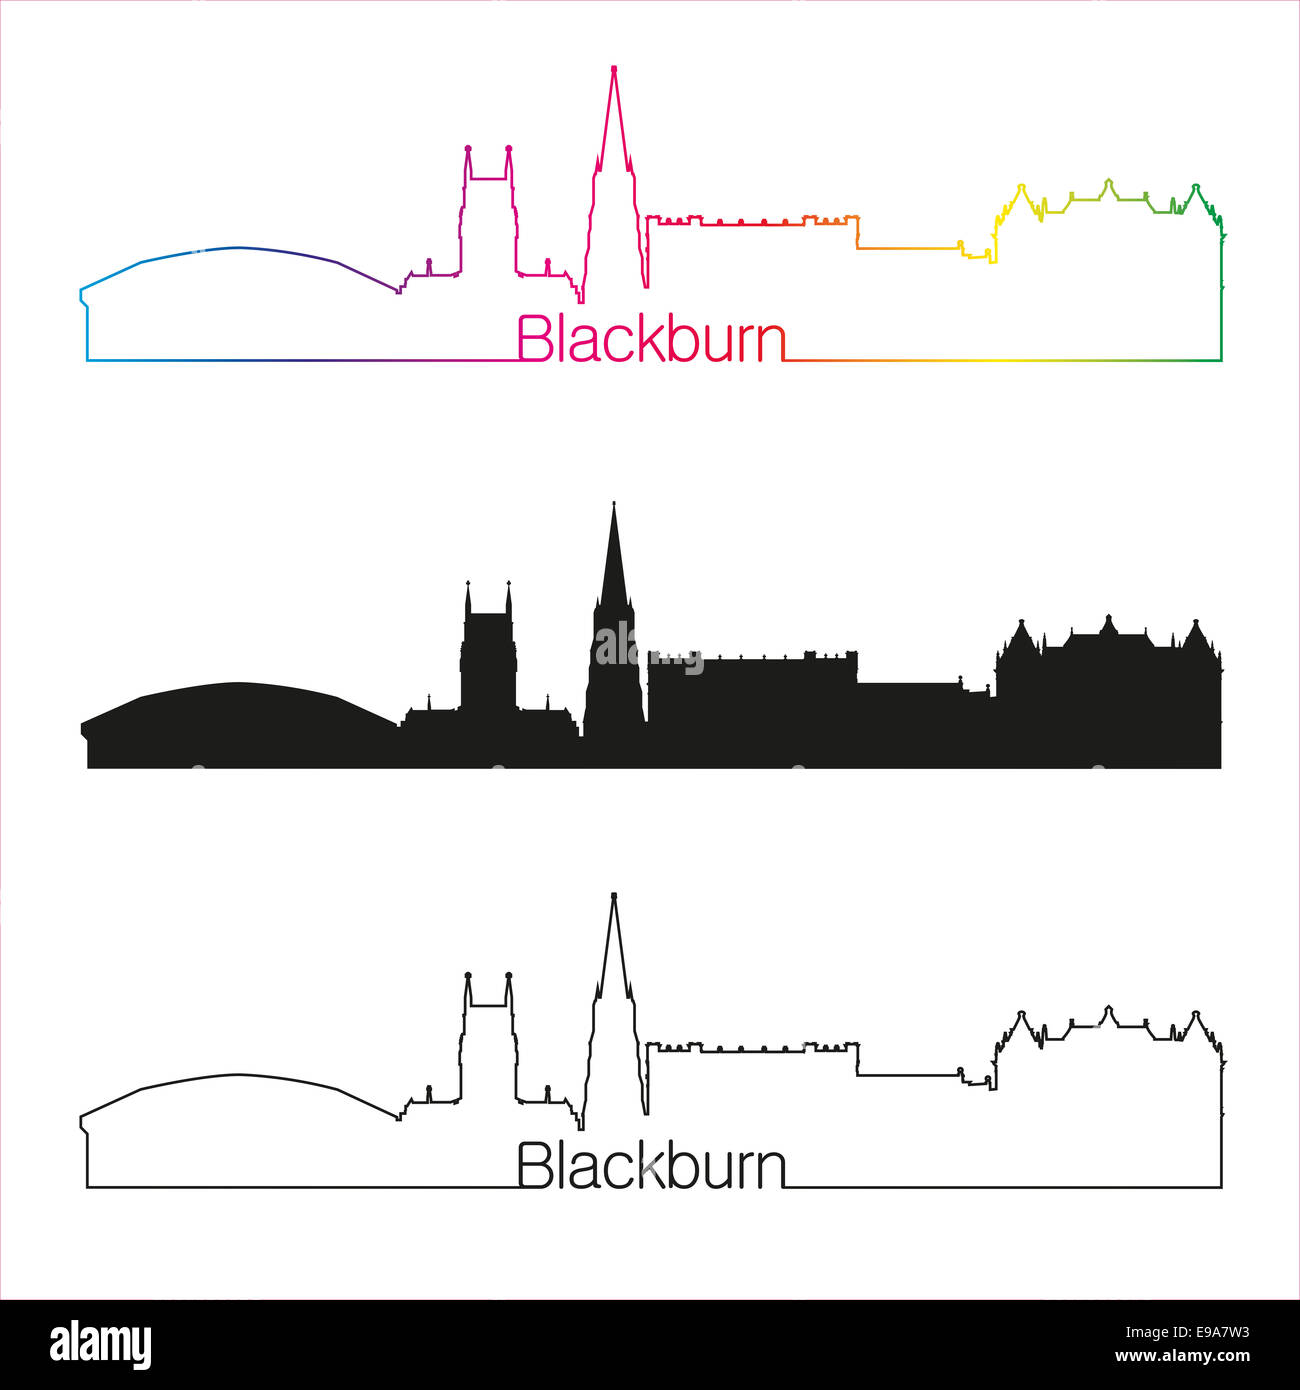 Blackburn skyline linear style with rainbow Stock Photo